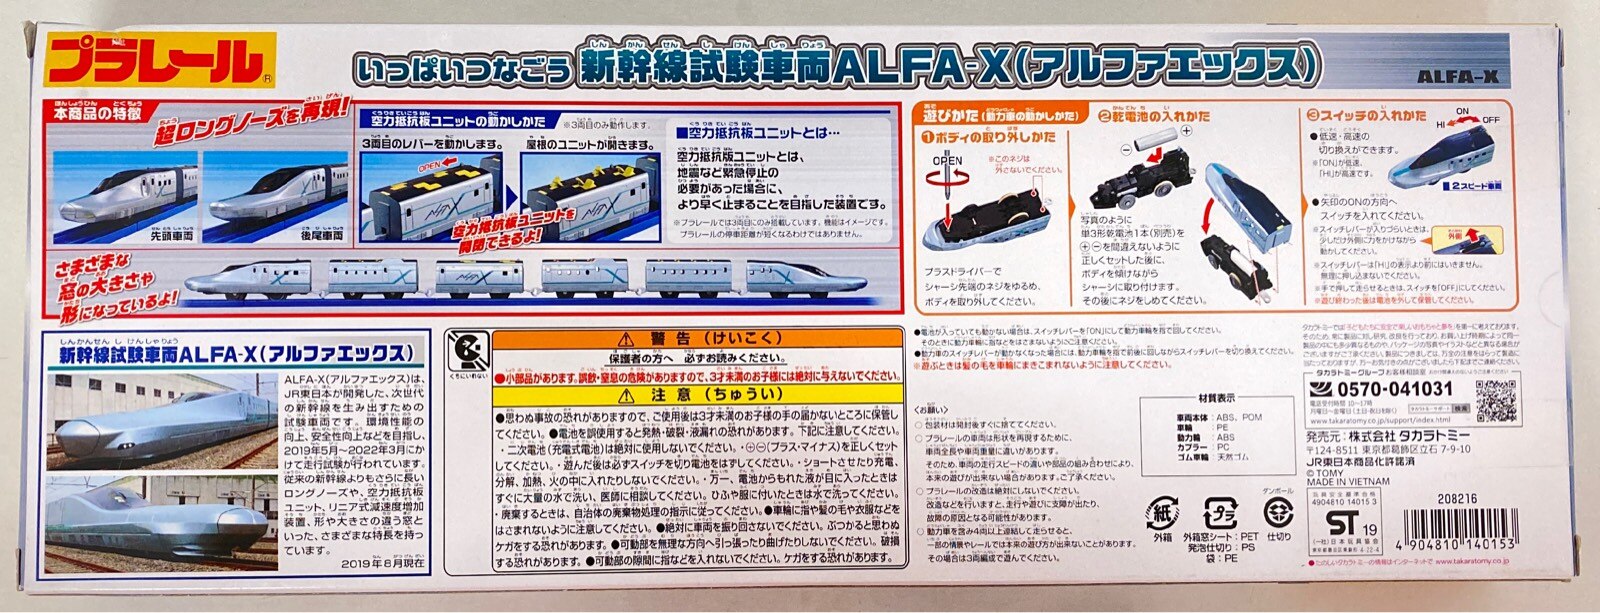 タカラトミー プラレール いっぱいつなごう 新幹線試験車両 ALFA-X (アルファエックス) ST19 | まんだらけ Mandarake